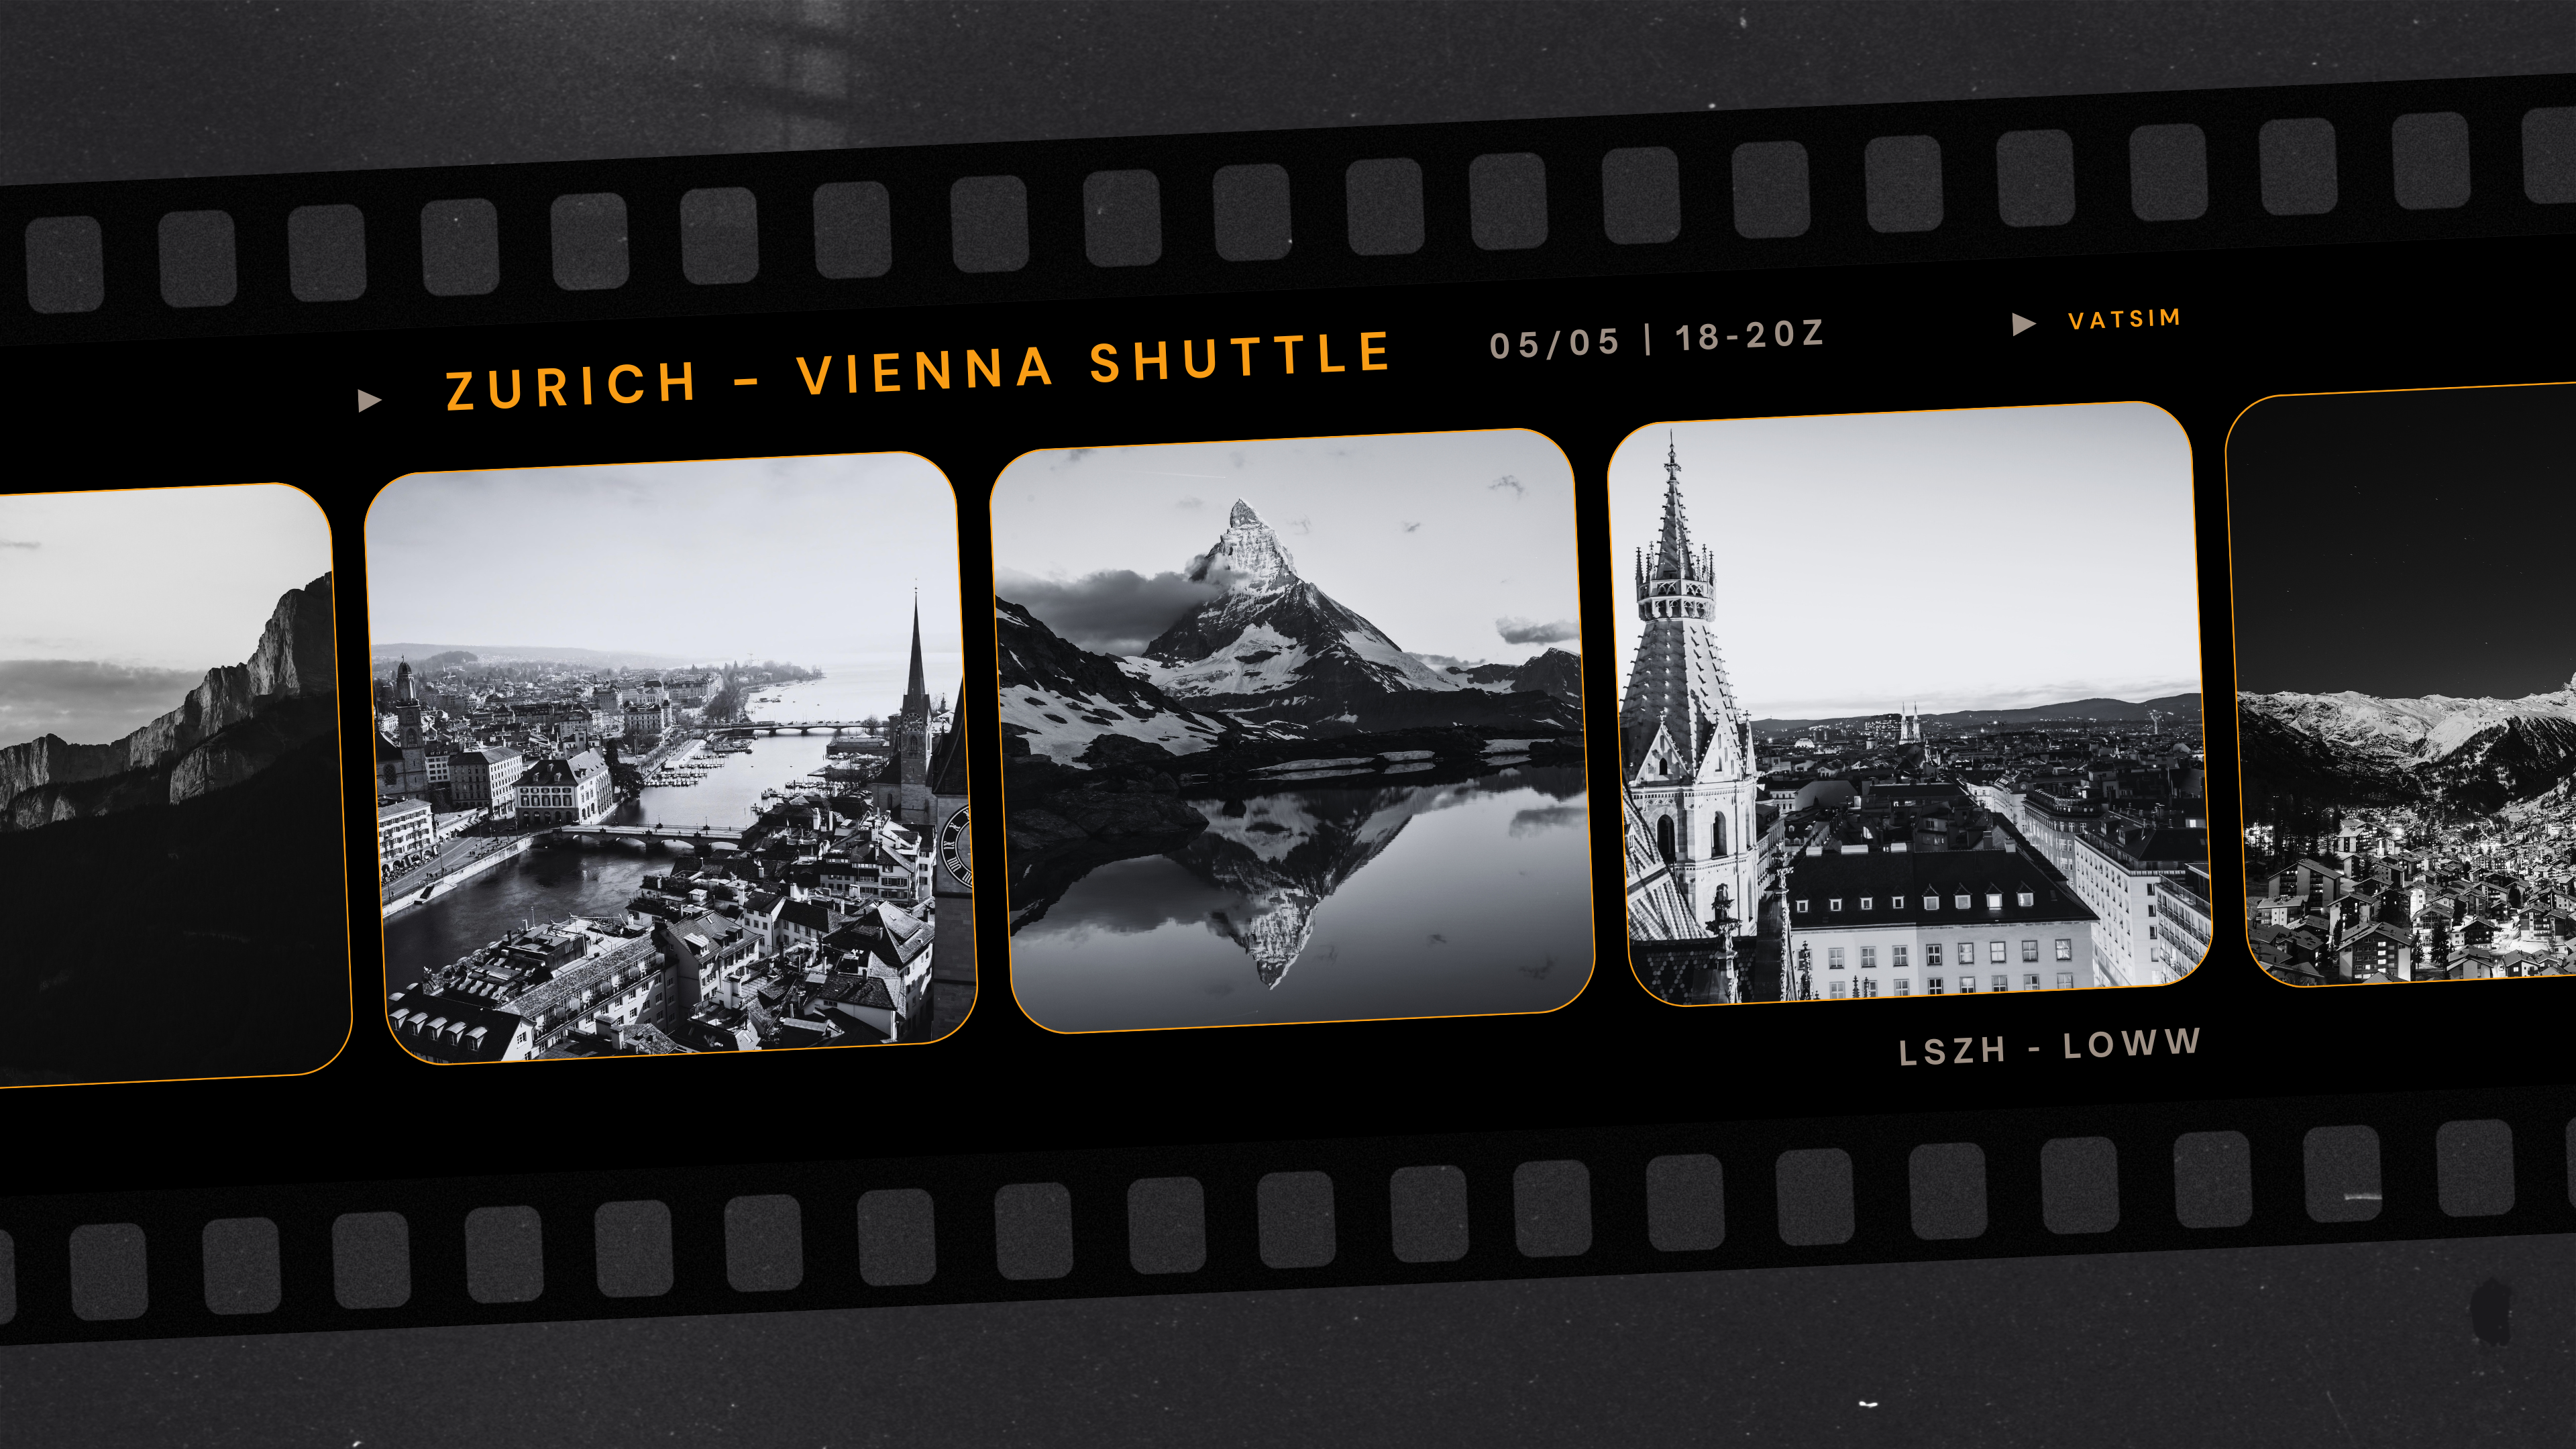 Zurich - Vienna Shuttle - Virtual Norwegian Events